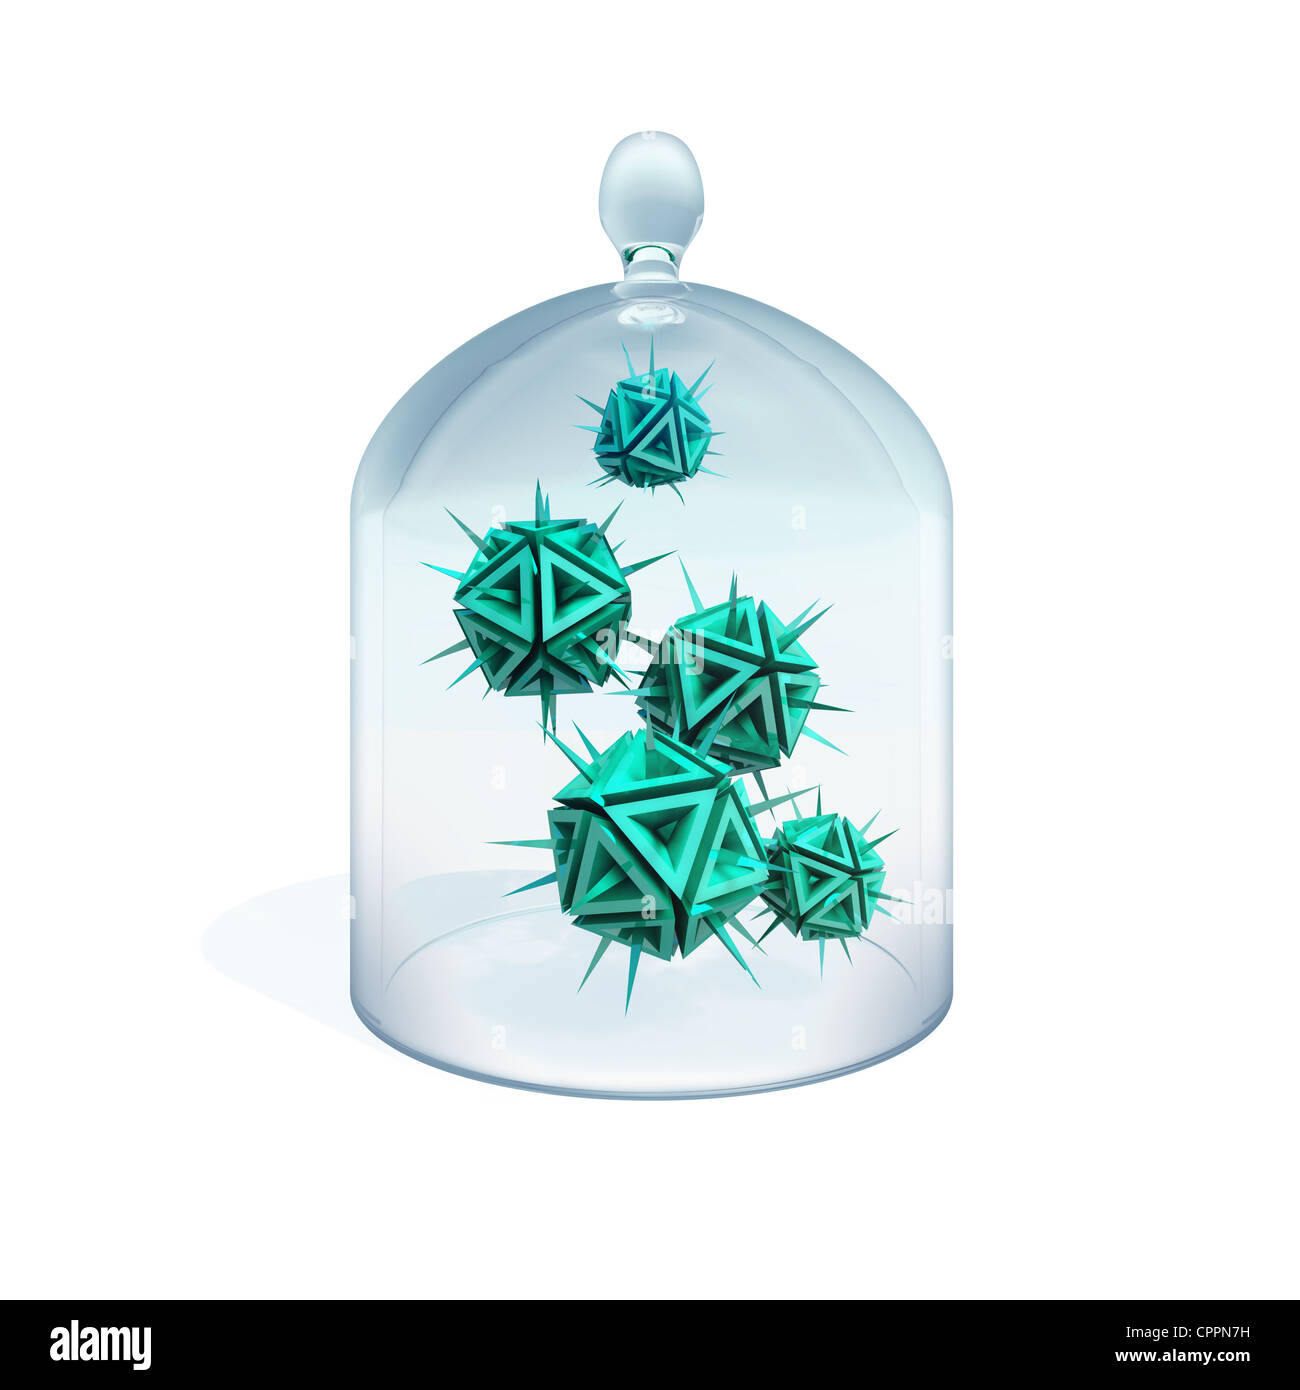 Abbildung von einem Viren in Quarantäne zu abstrahieren, wie eine grüne Gefahr scharfe Gegenstände mit Spikes, die unter dem Deckmantel des Glases gemacht Stockfoto